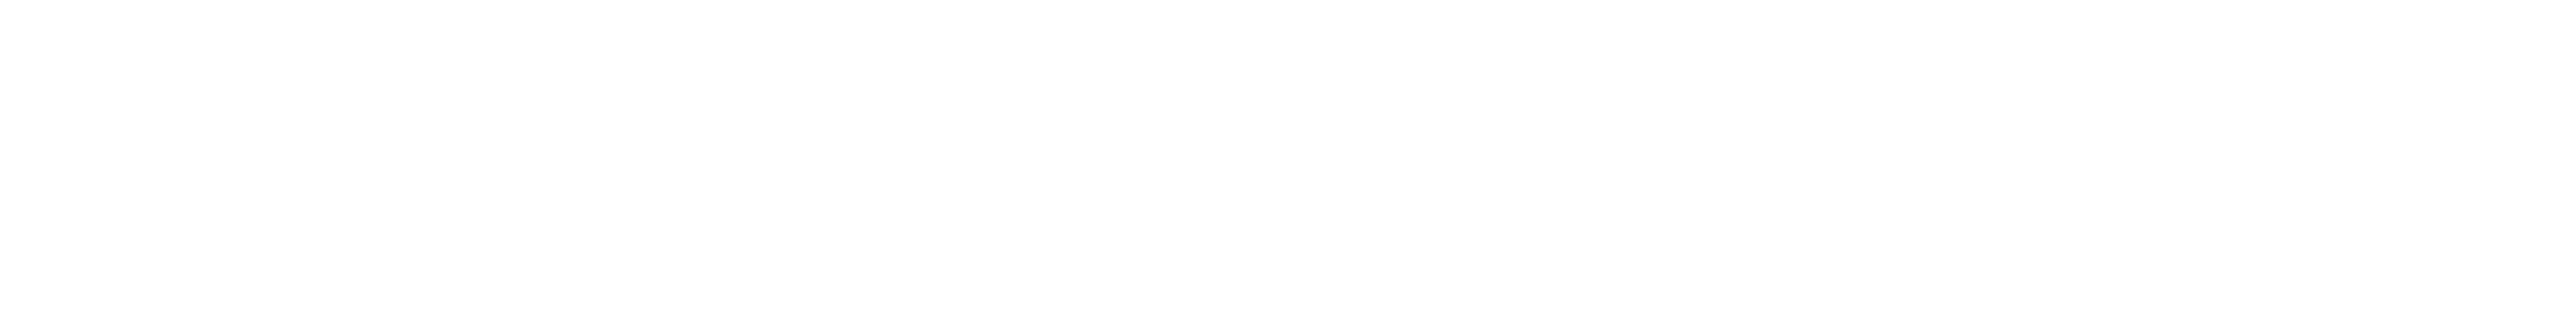 UVU Online logo text in white